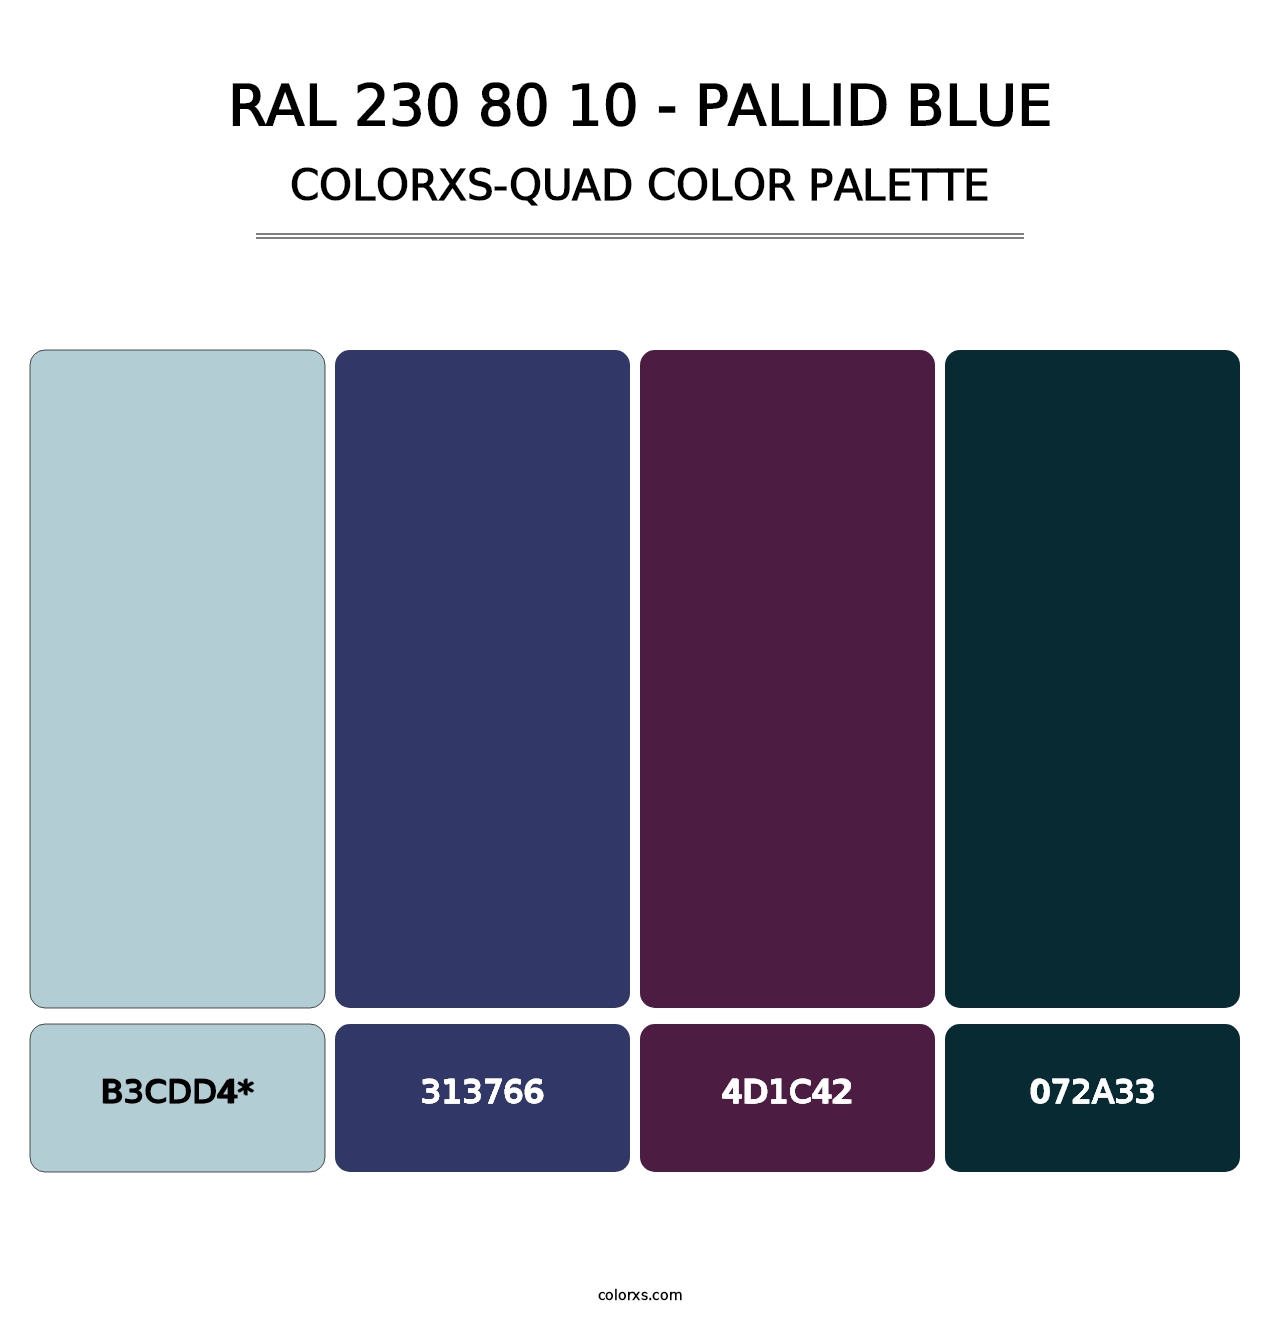 RAL 230 80 10 - Pallid Blue - Colorxs Quad Palette